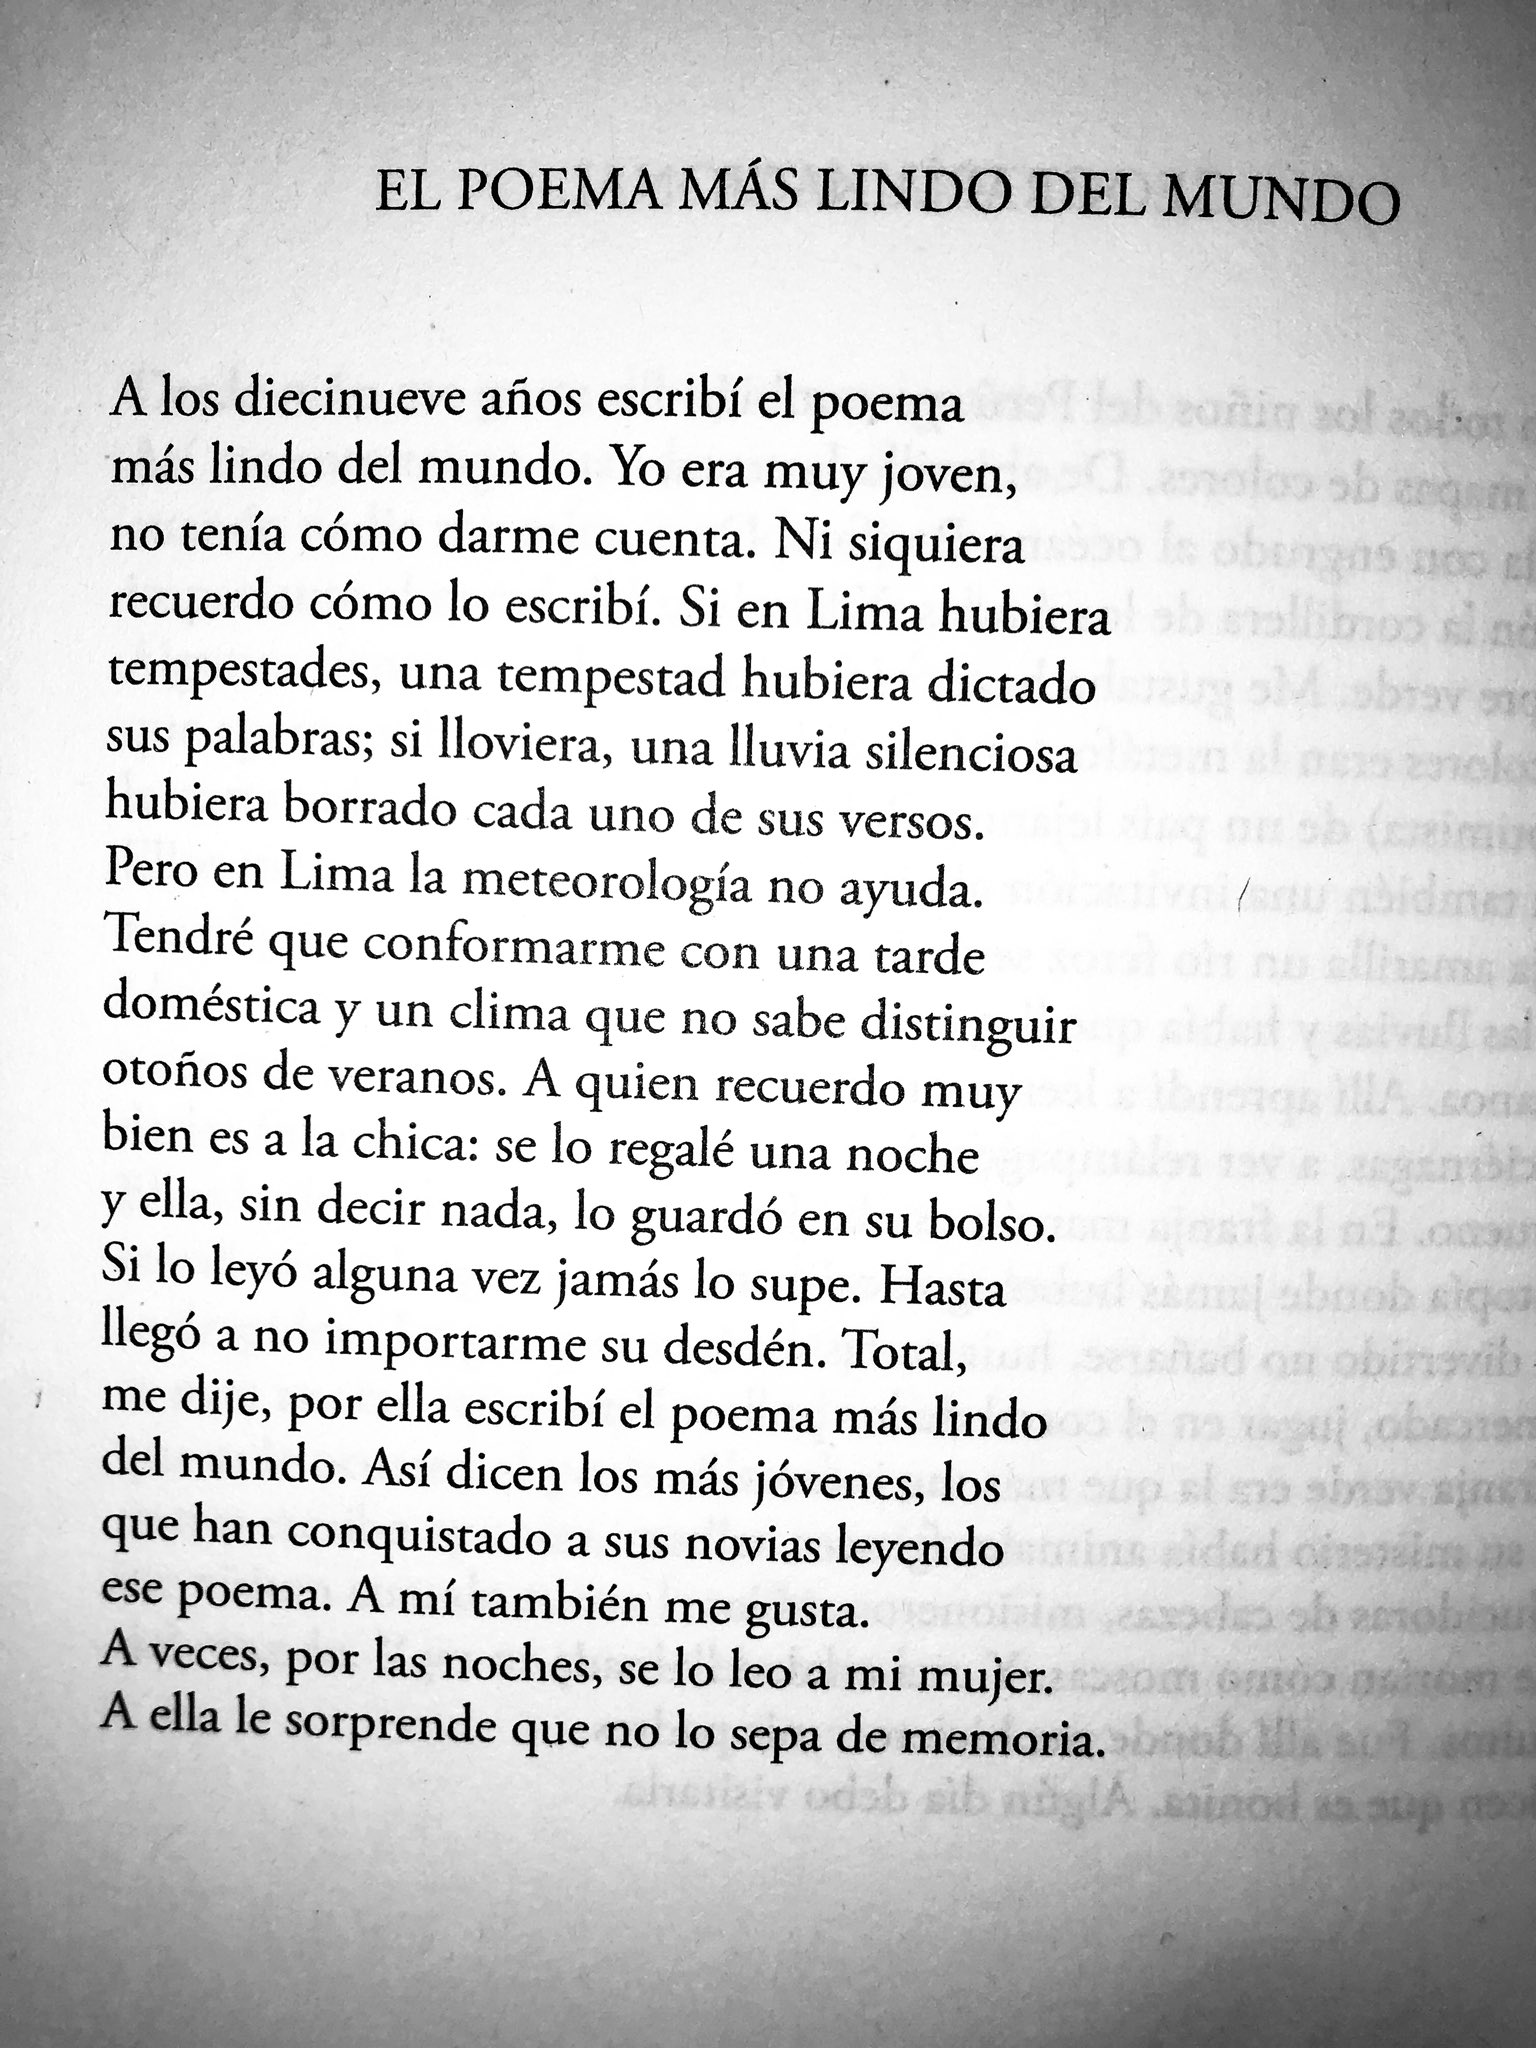 Insignia Caliza Correo Lee Por Gusto Twitterren: "El poema más lindo del mundo. Eduardo Chirinos.  https://t.co/4qBmVvGY7g" / Twitter